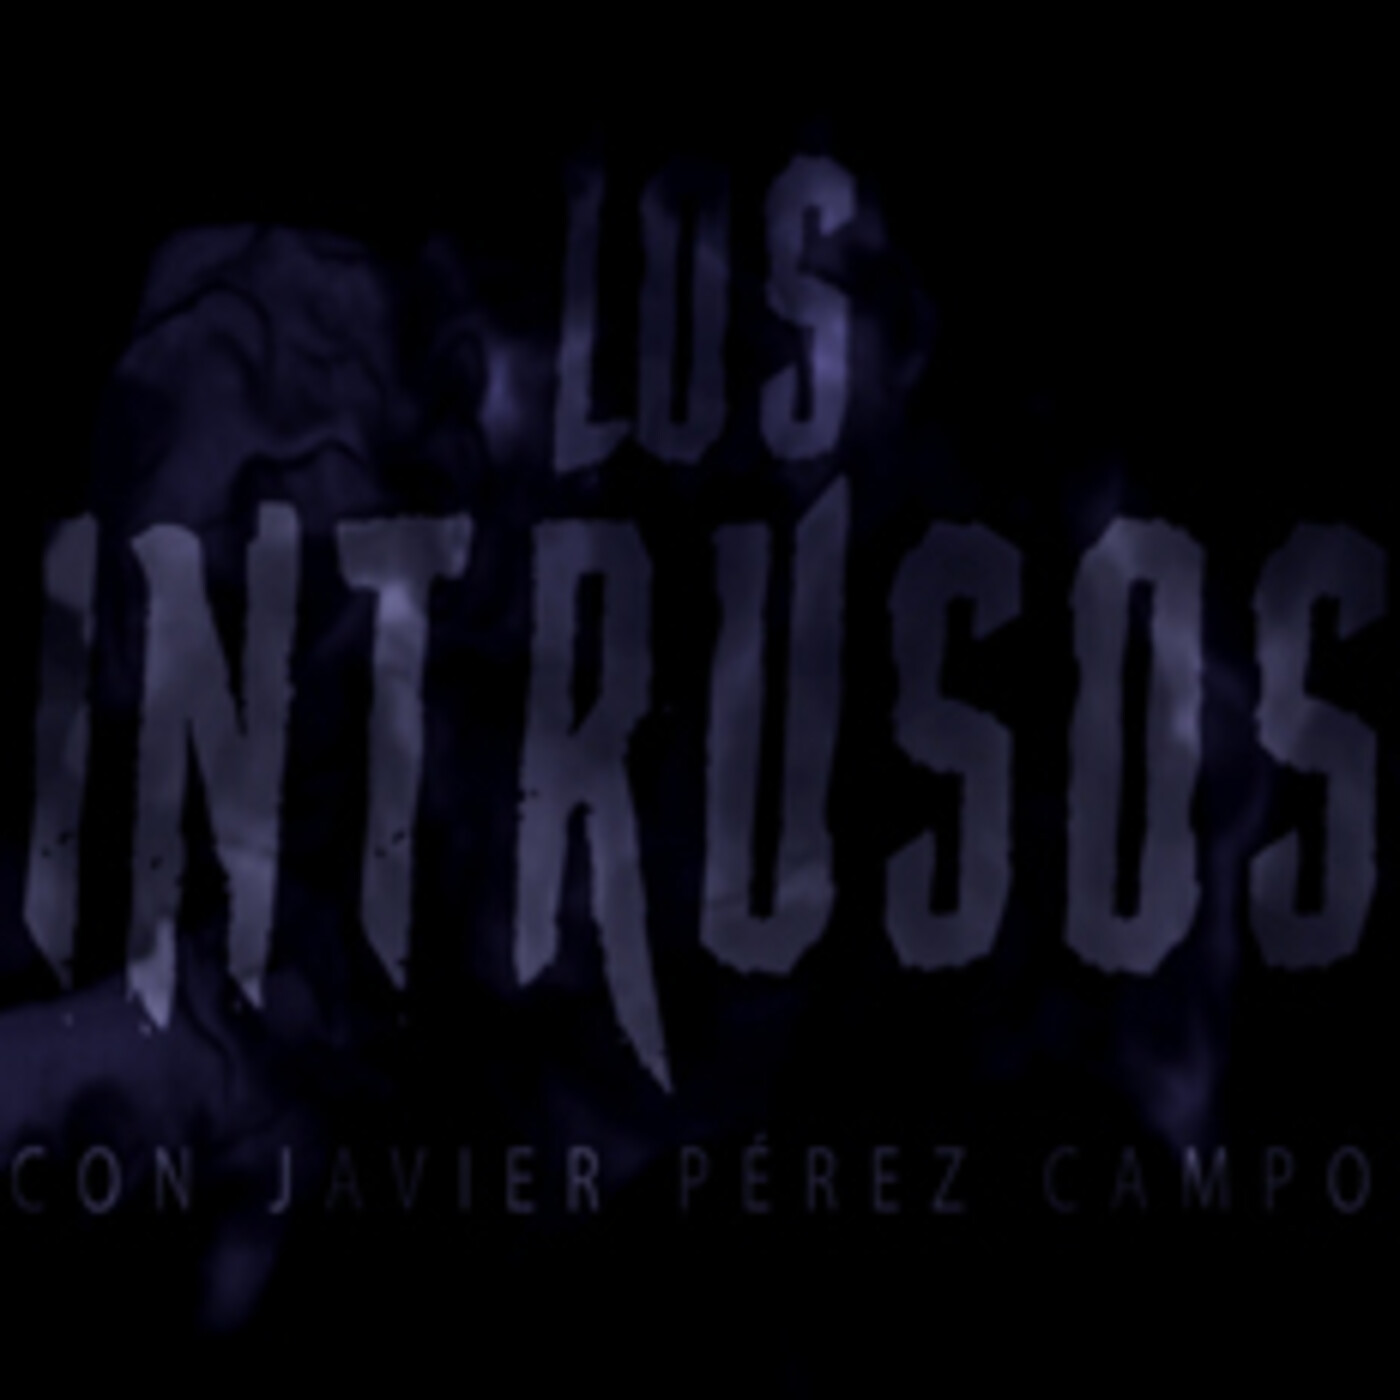 Entrevista a Javier Pérez Campos - Los Intrusos